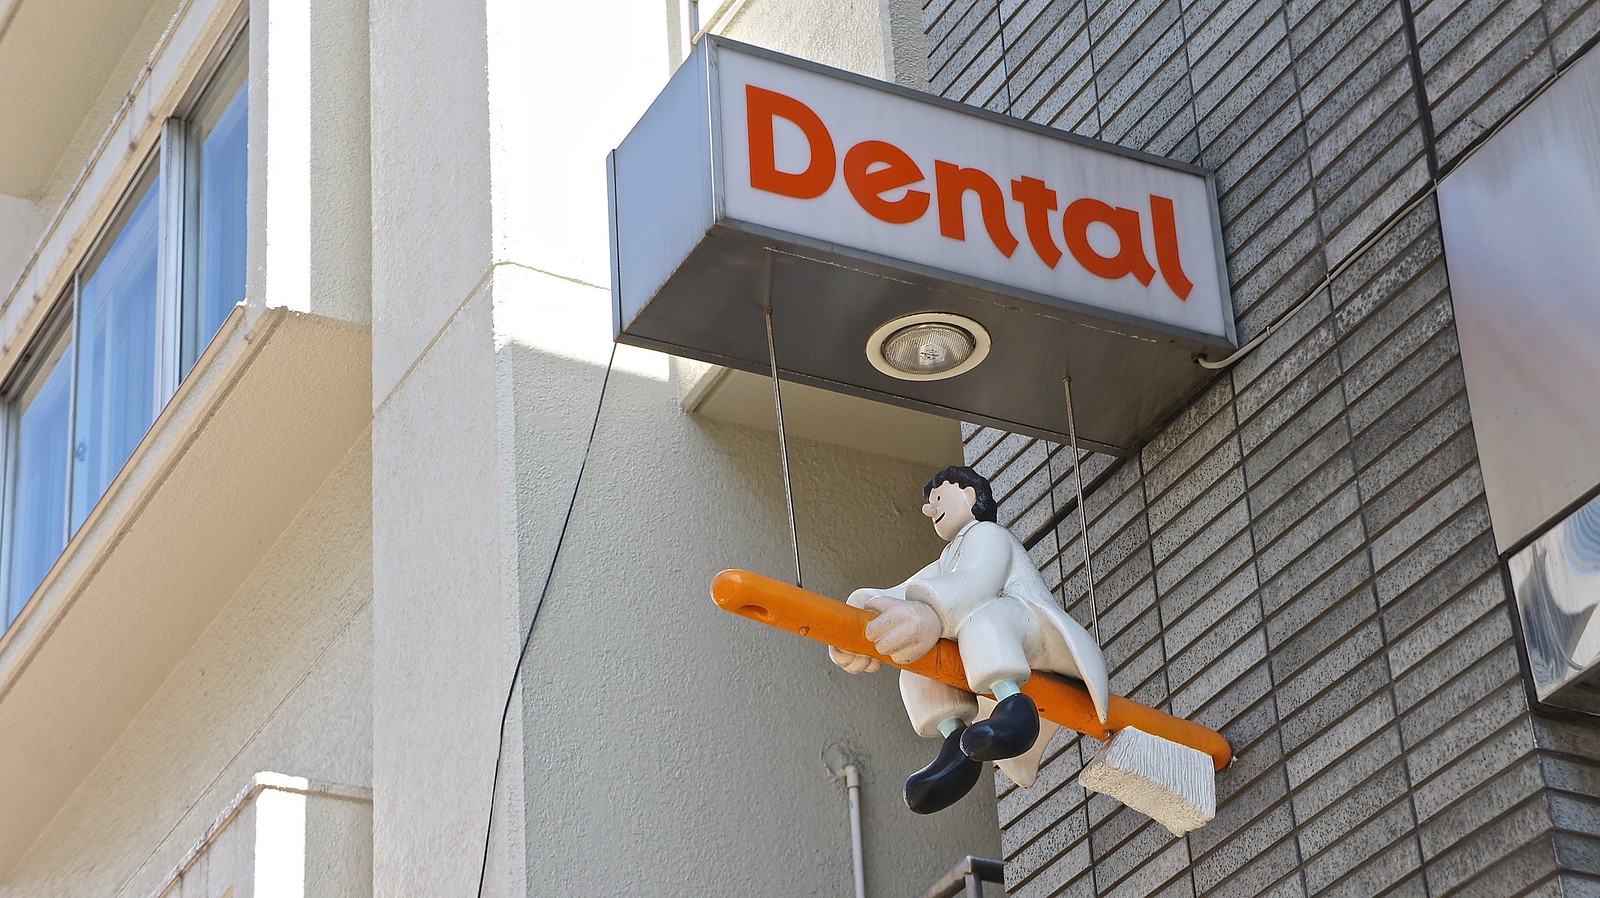 Go Dental at Hiroo